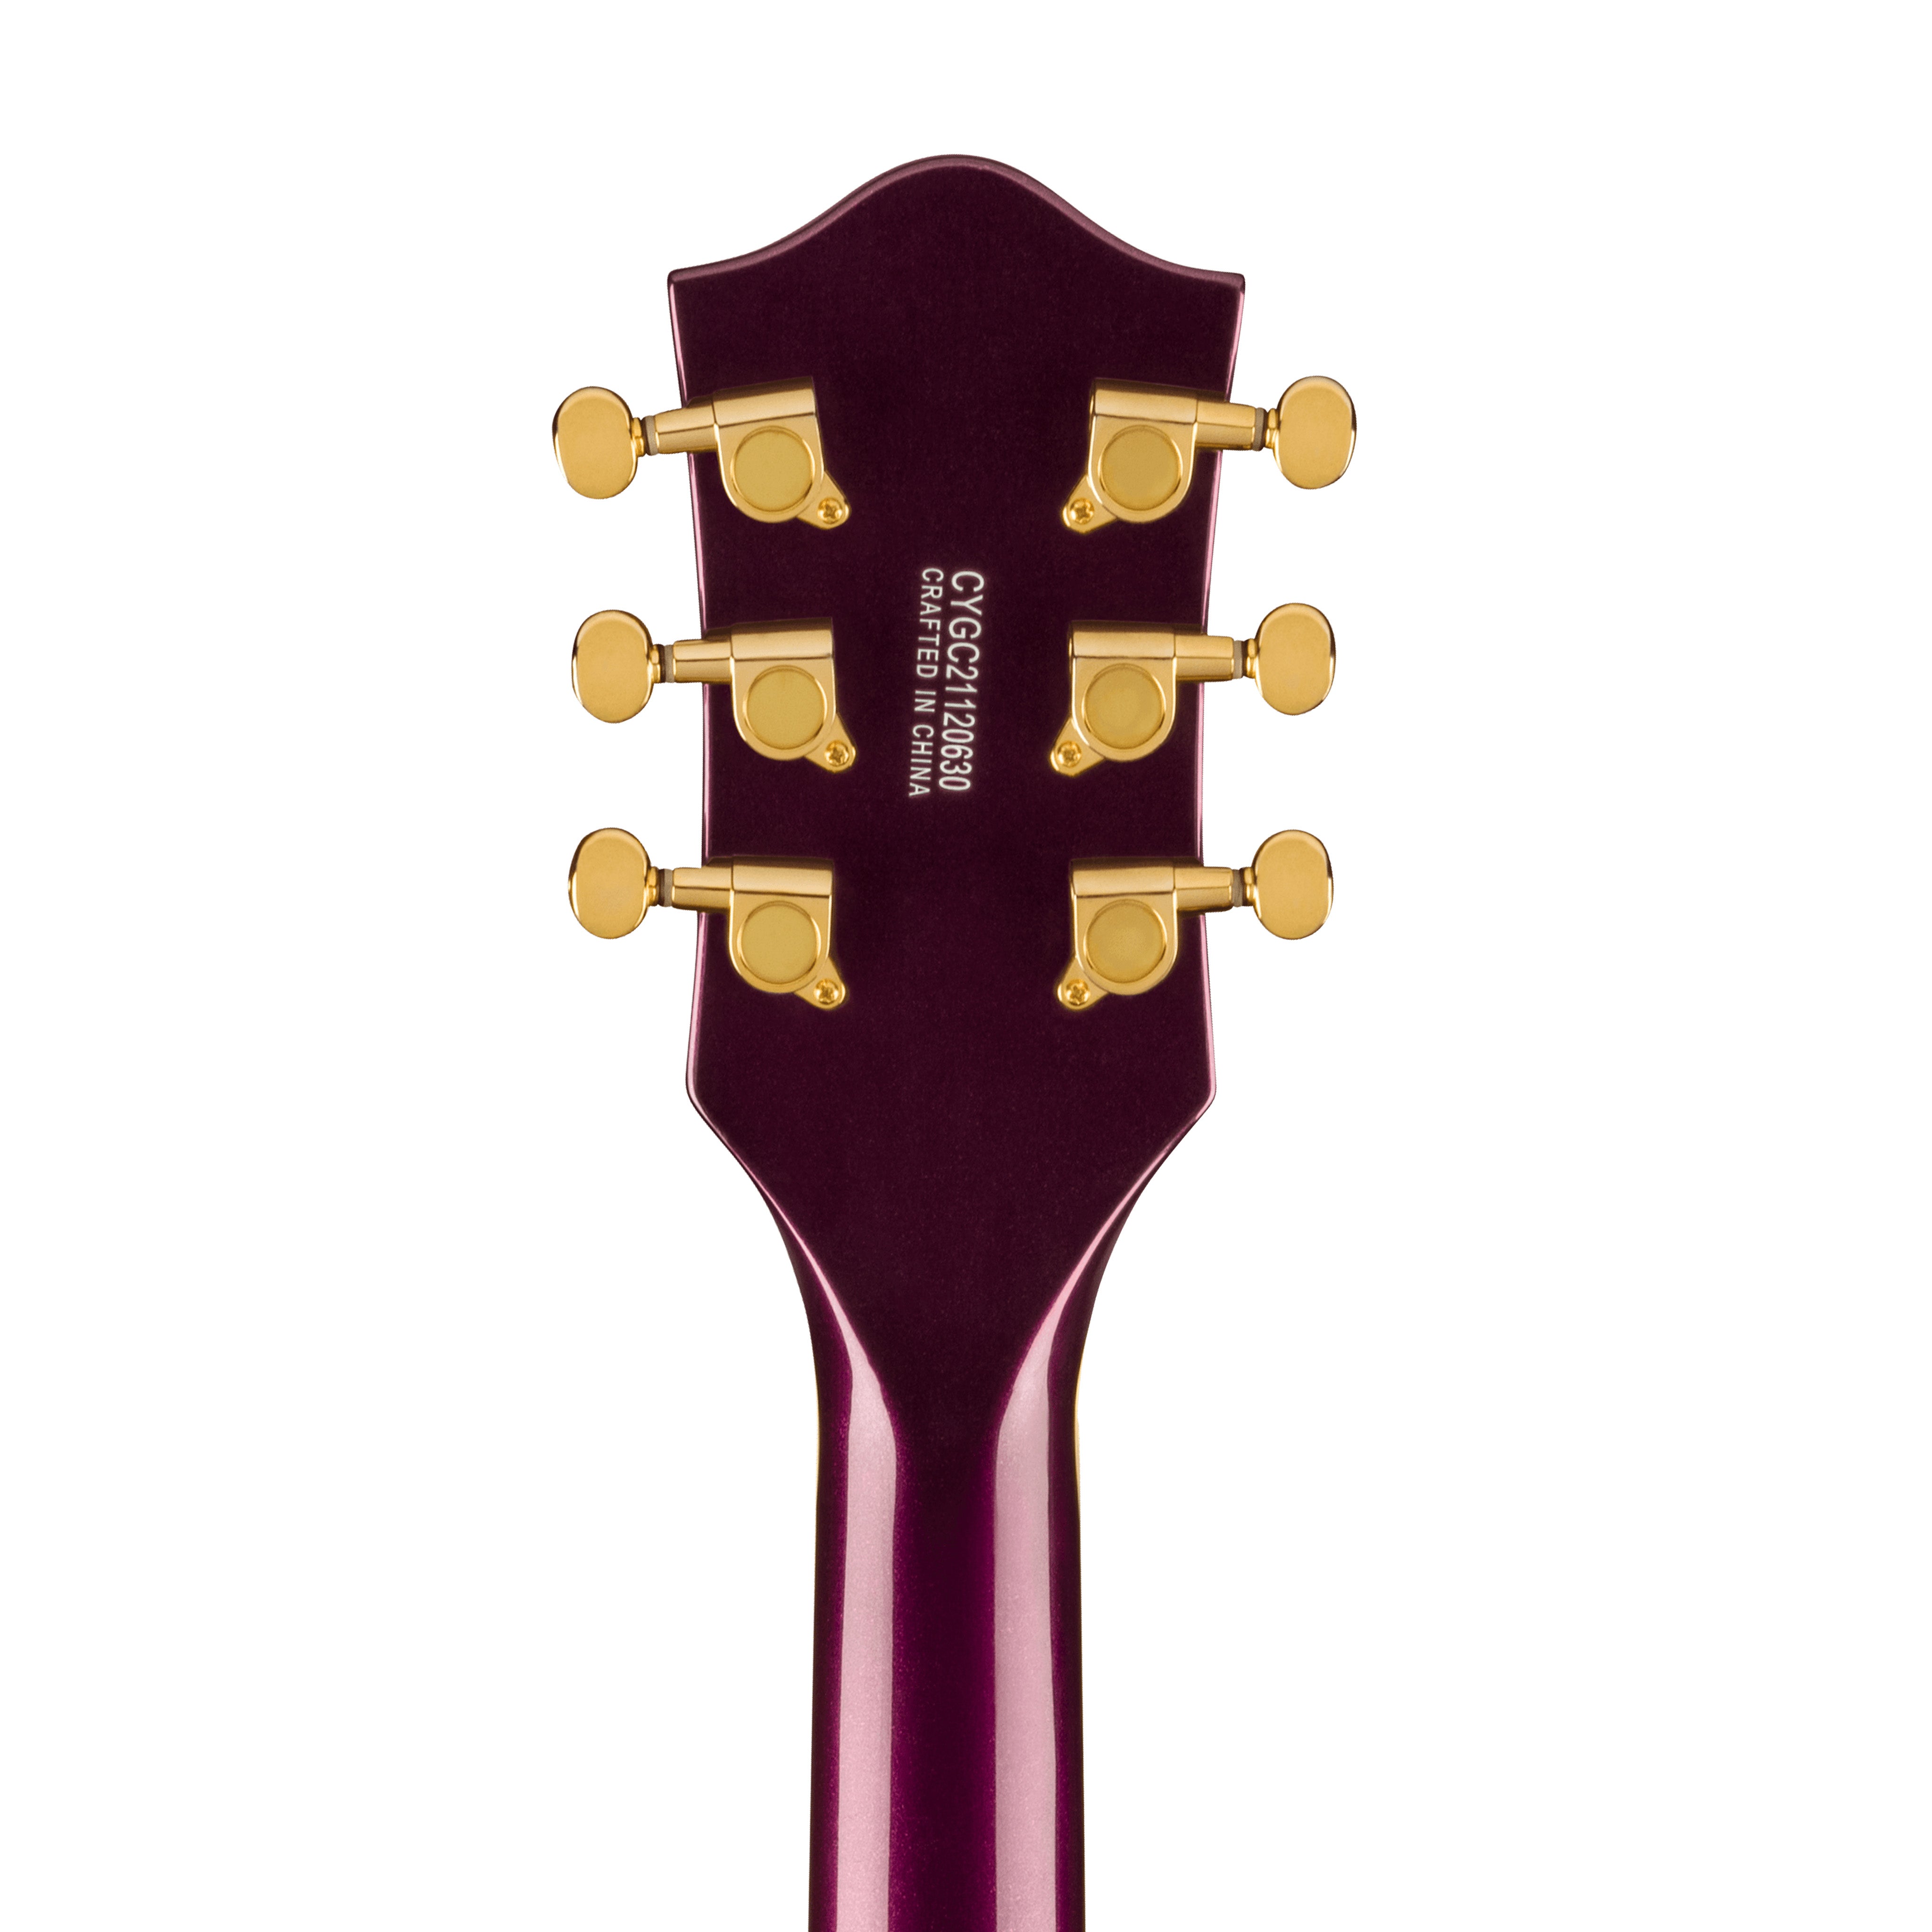 Gretsch G5655TG Electromatic Centre Block Jr Single-Cut Guitar w/Bigsby, Laurel FB Electric Guitar, Amethyst